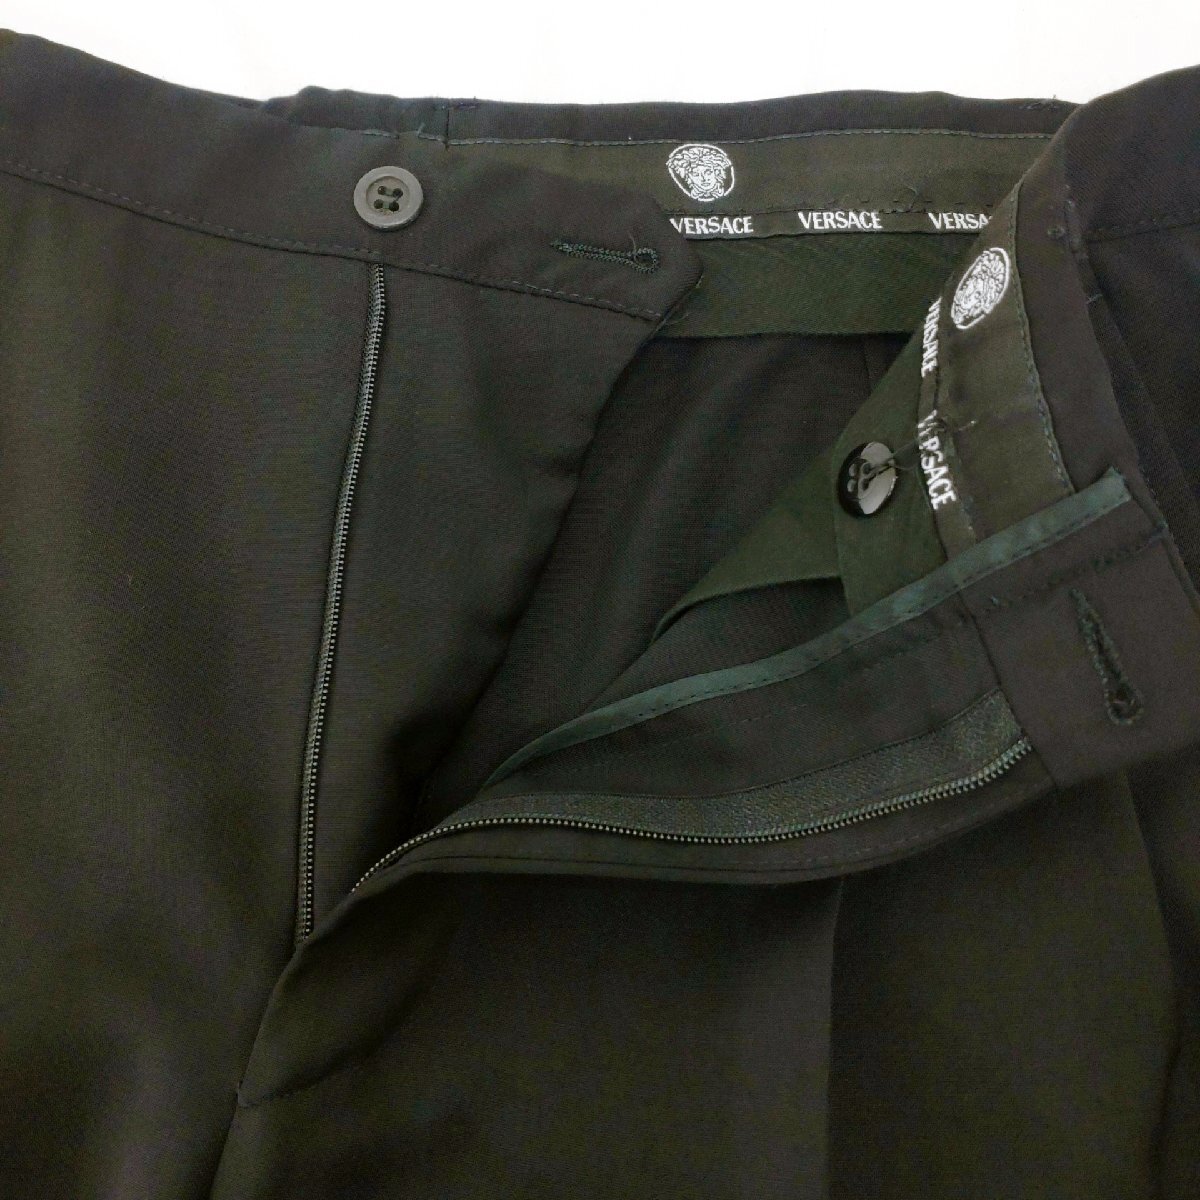 GIANN VERSACE スラックス サイズ:44 ブラック 無地 春夏物 パンツ ツータック メンズ ジャンニベルサーチの画像8